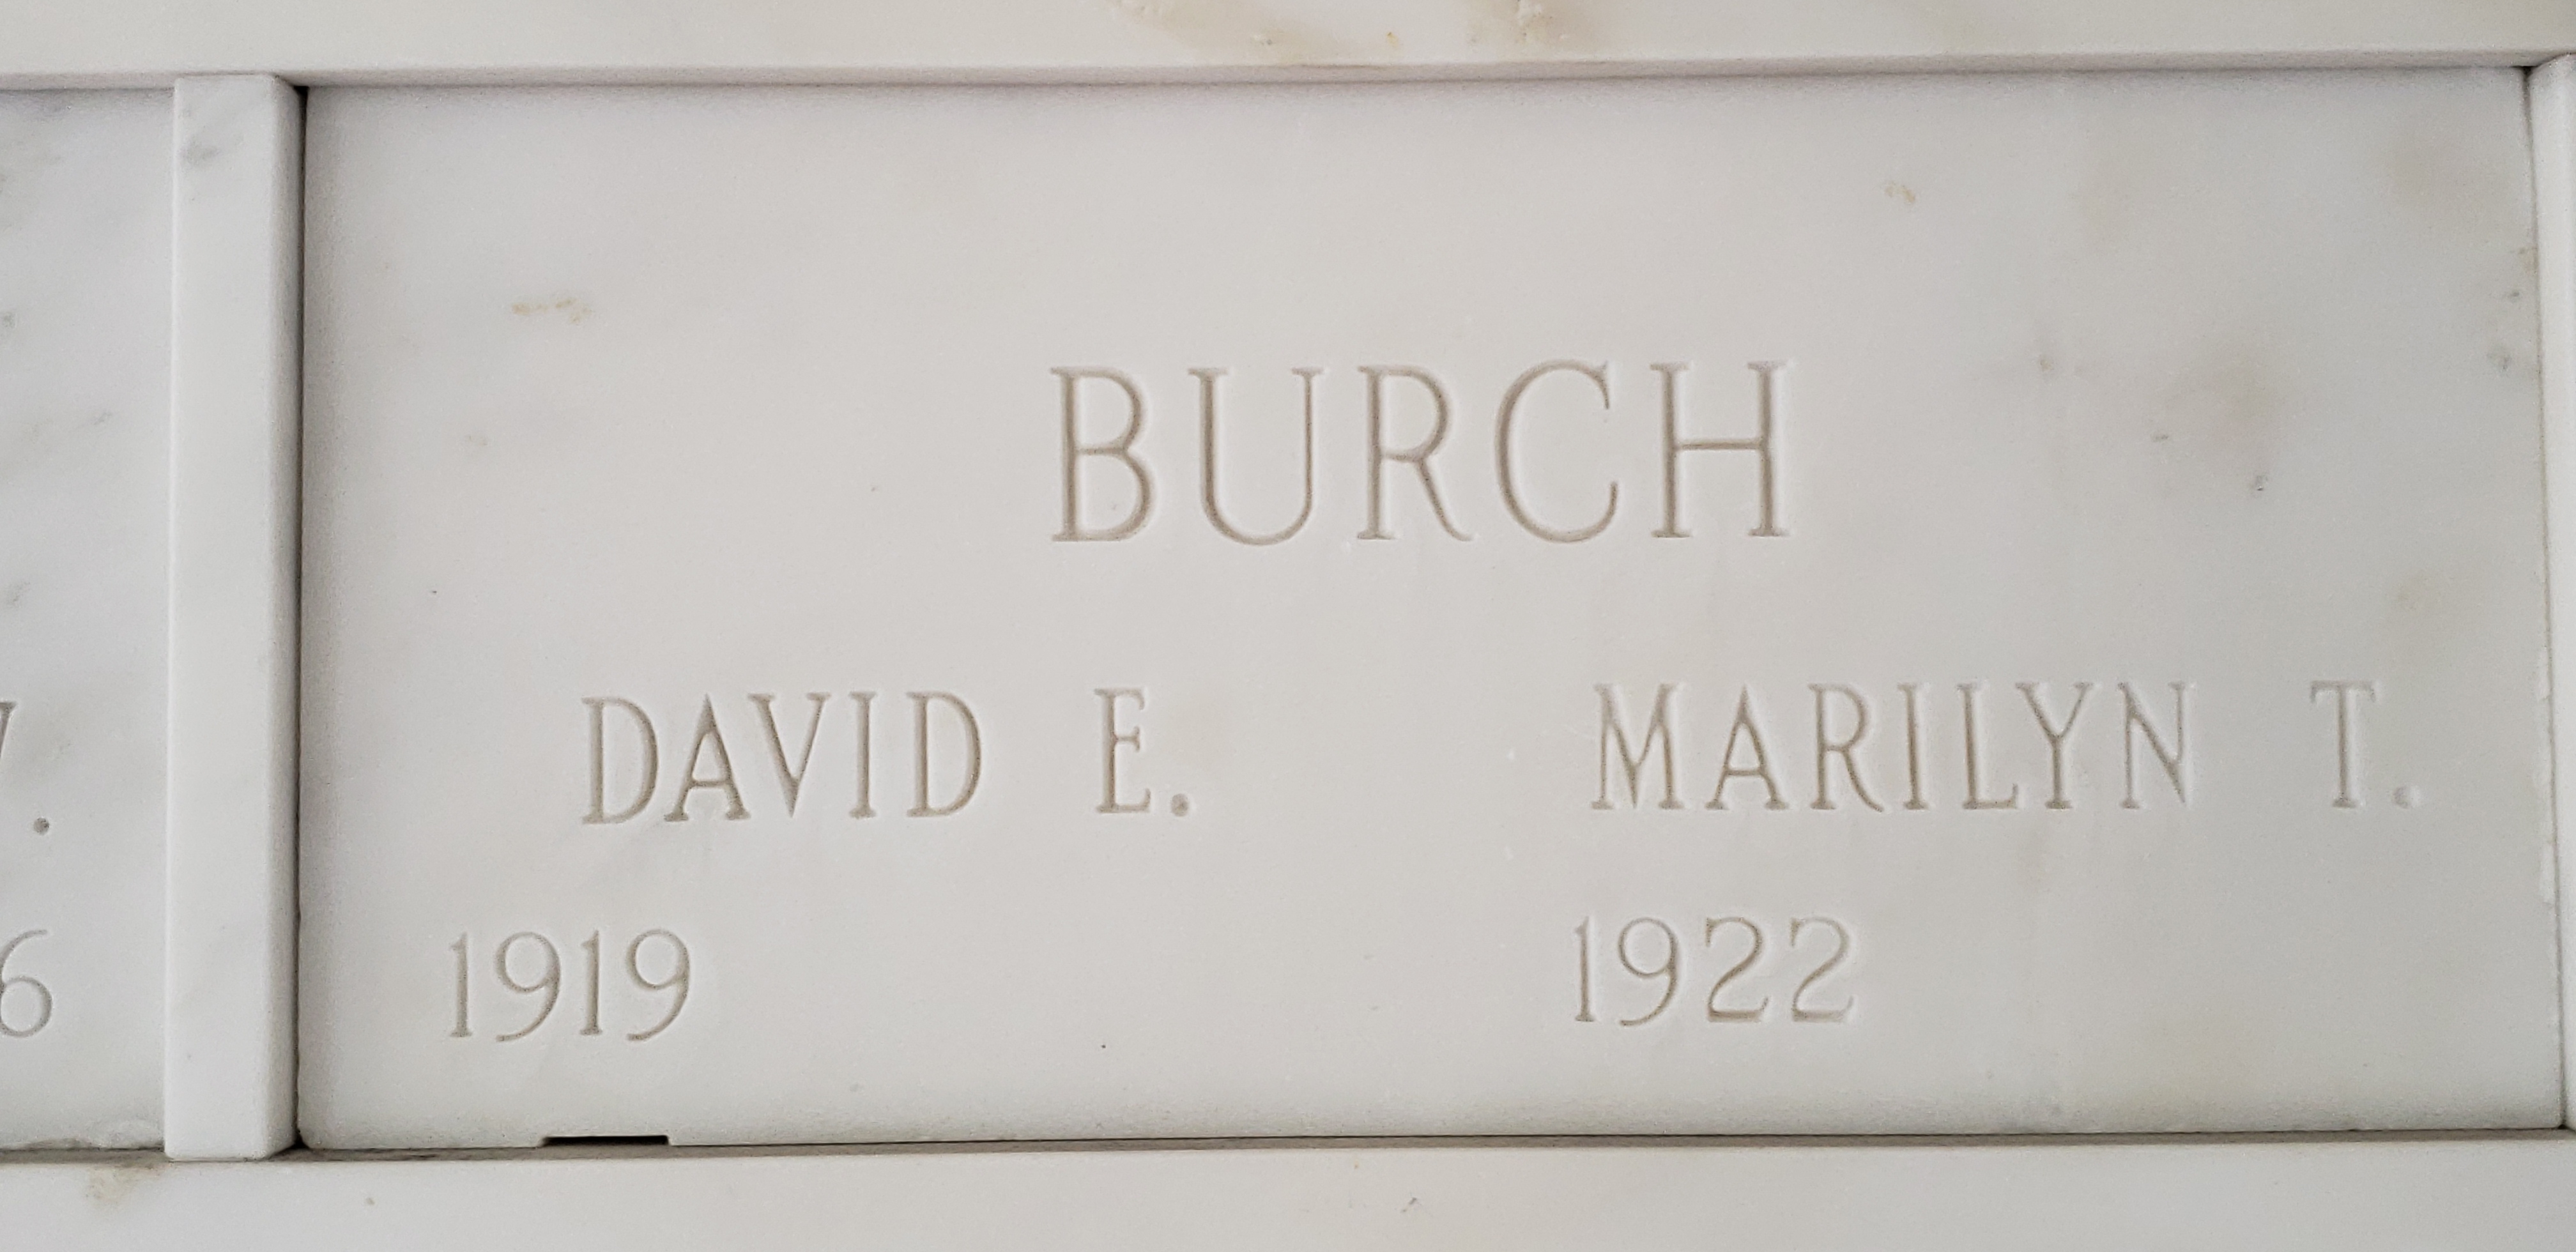 David E Burch